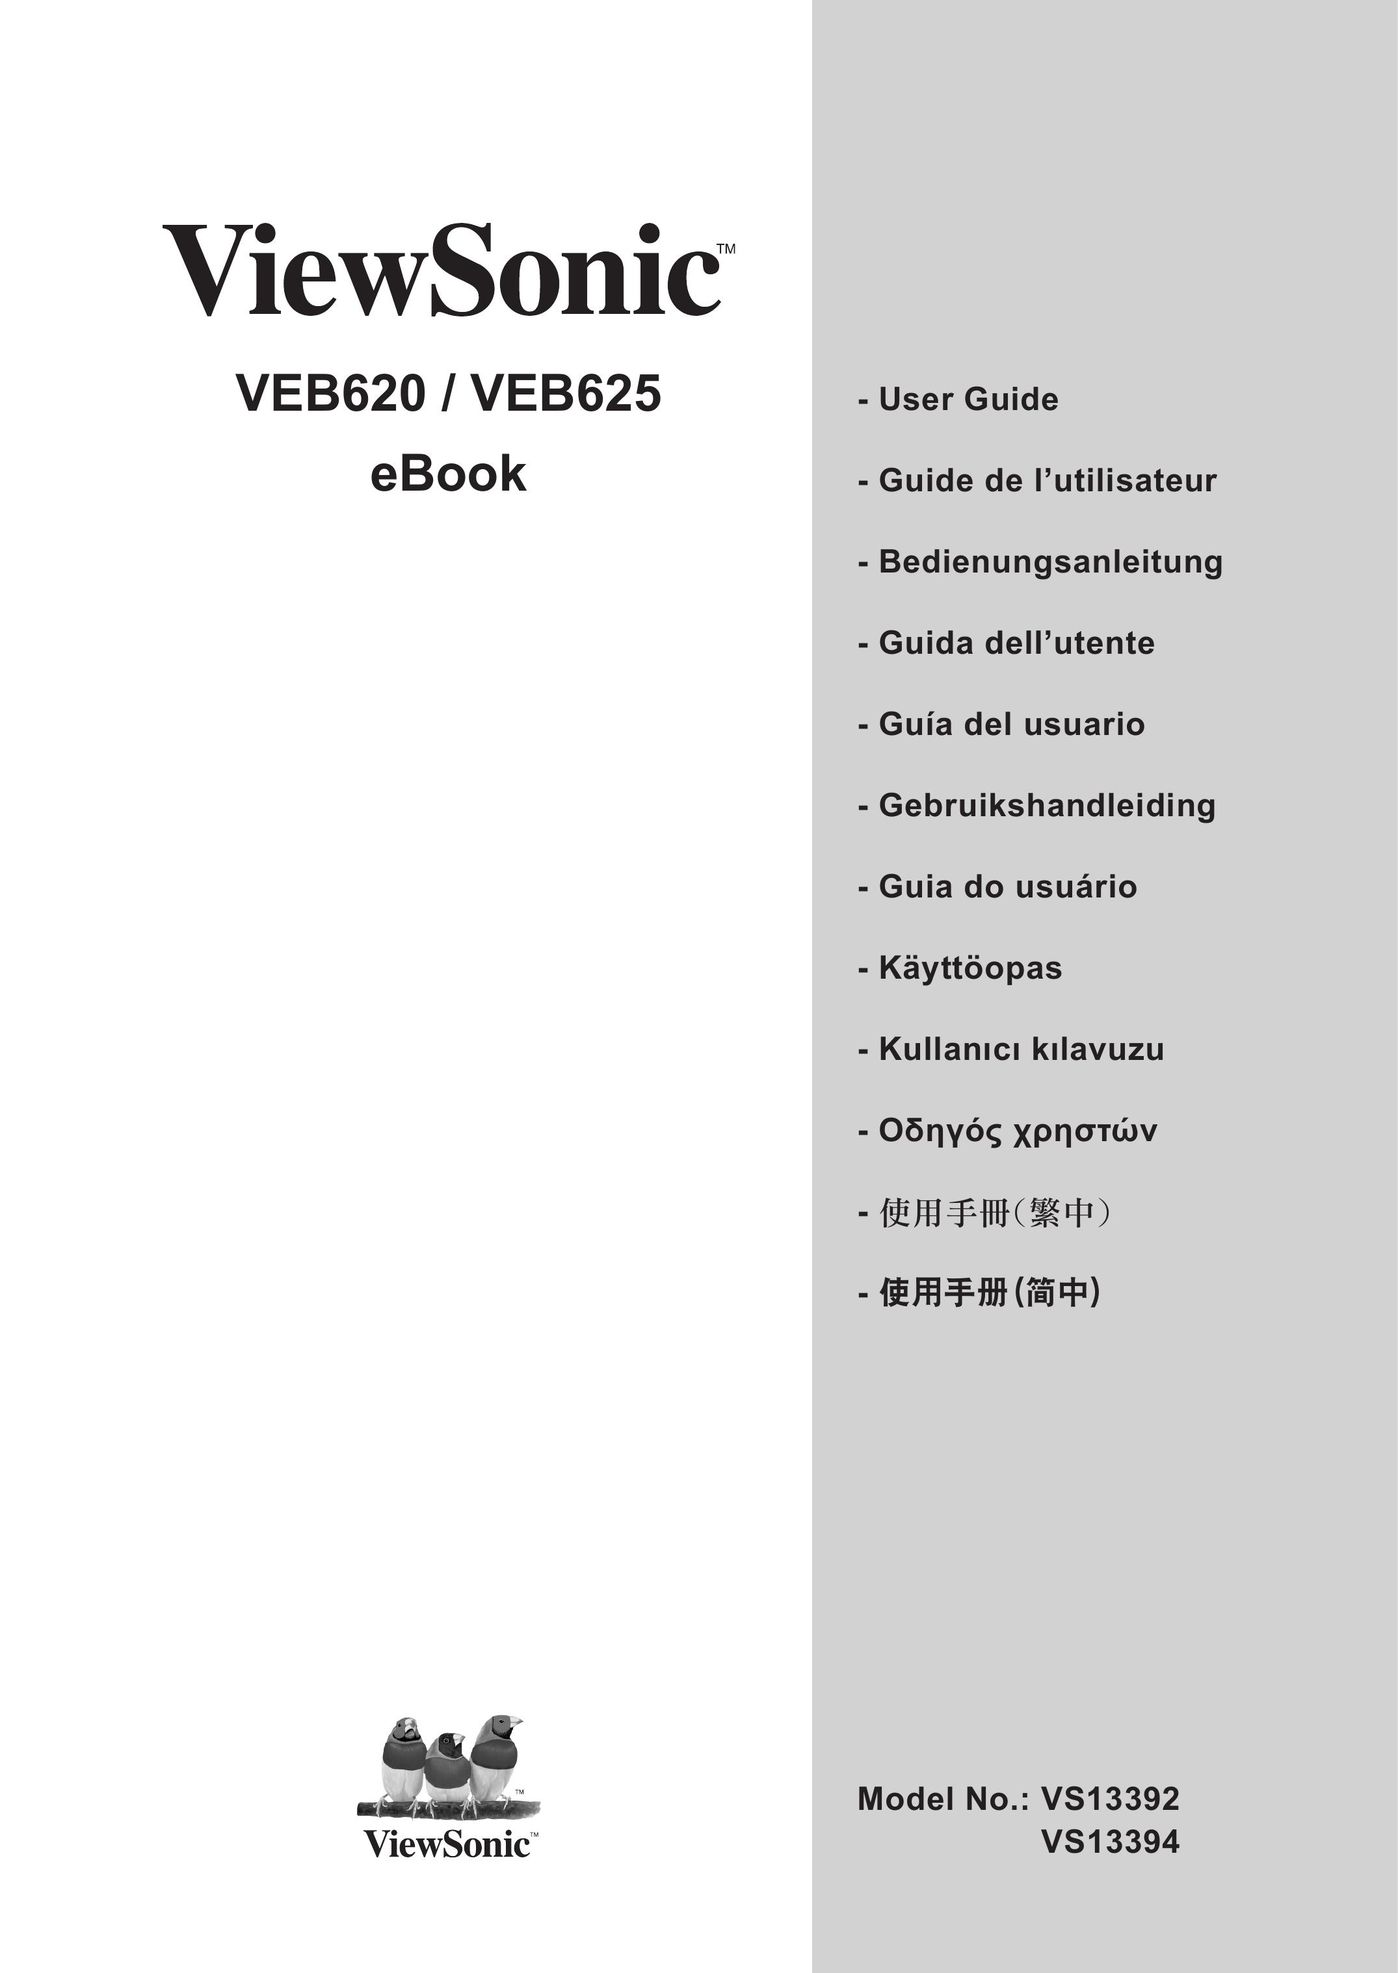 ViewSonic VS13392 eBook Reader User Manual